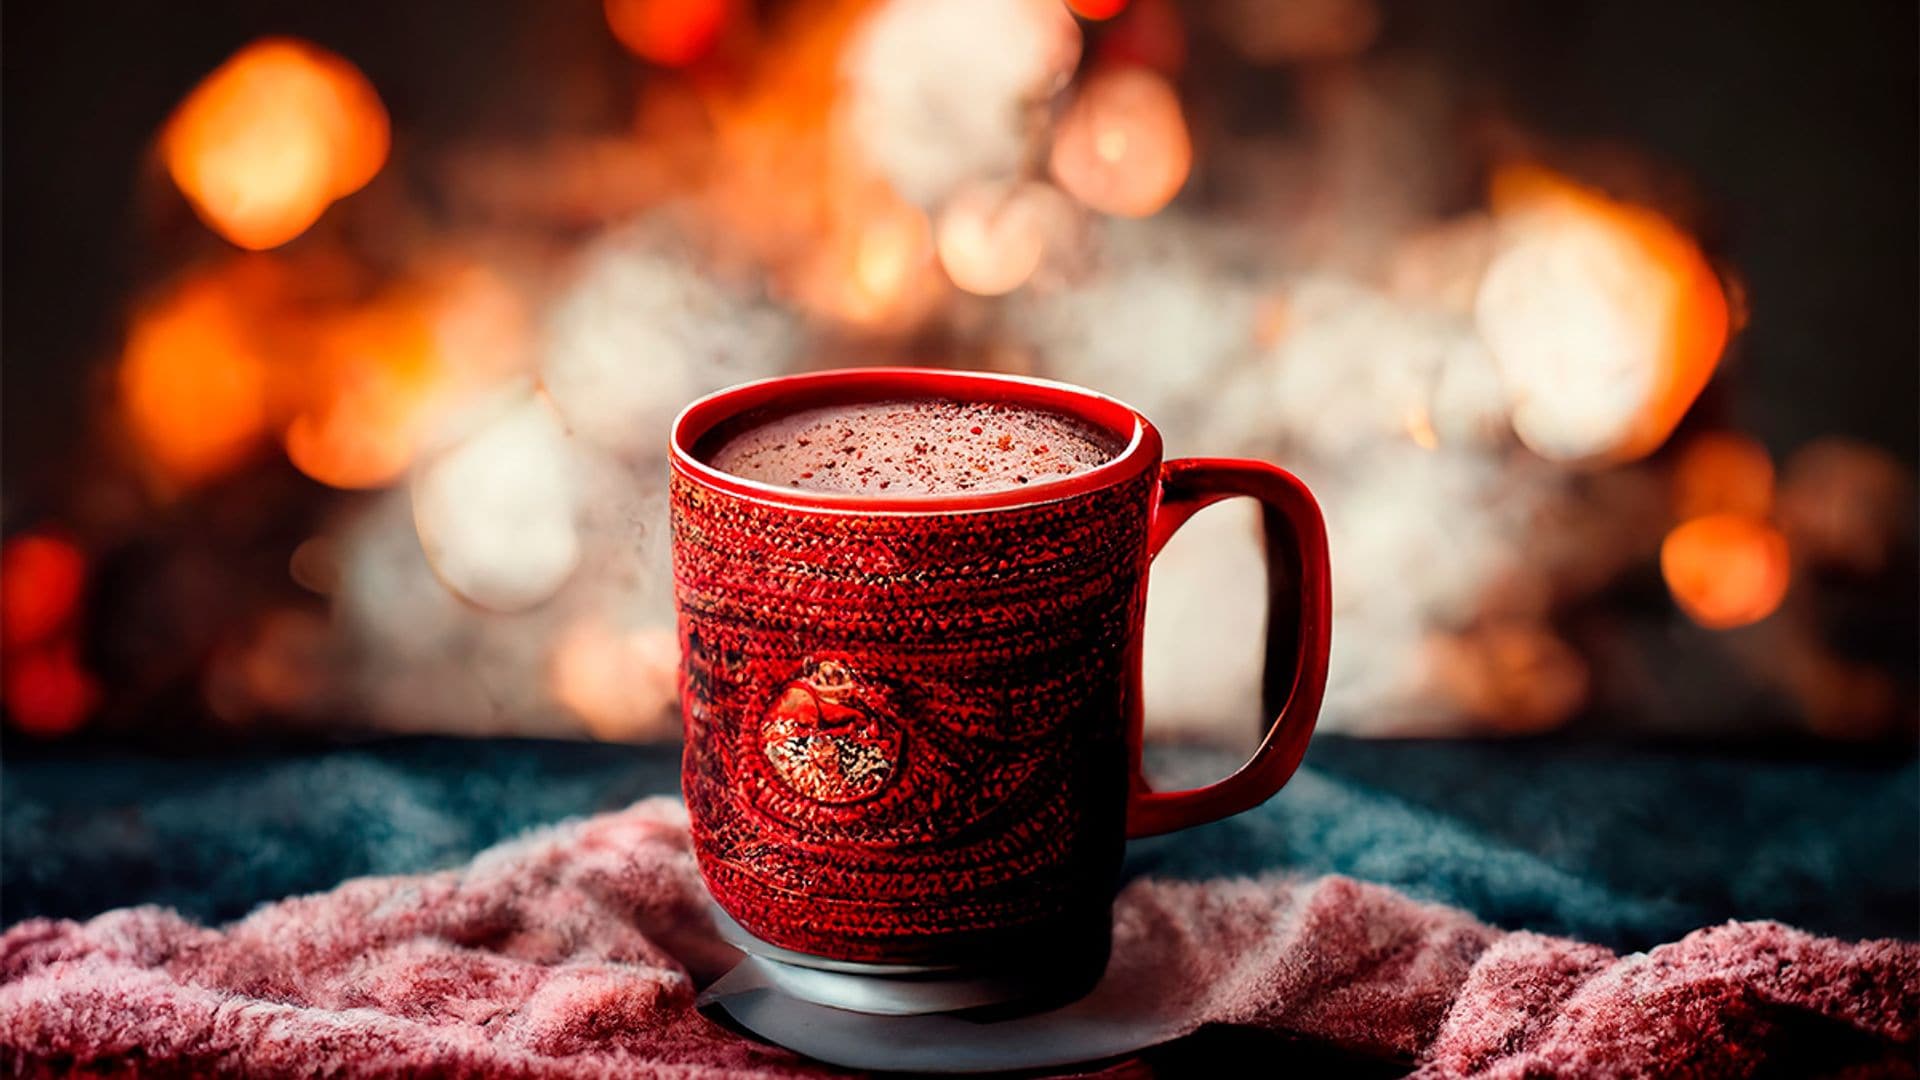 Chocolate a la taza con café y pimienta roja